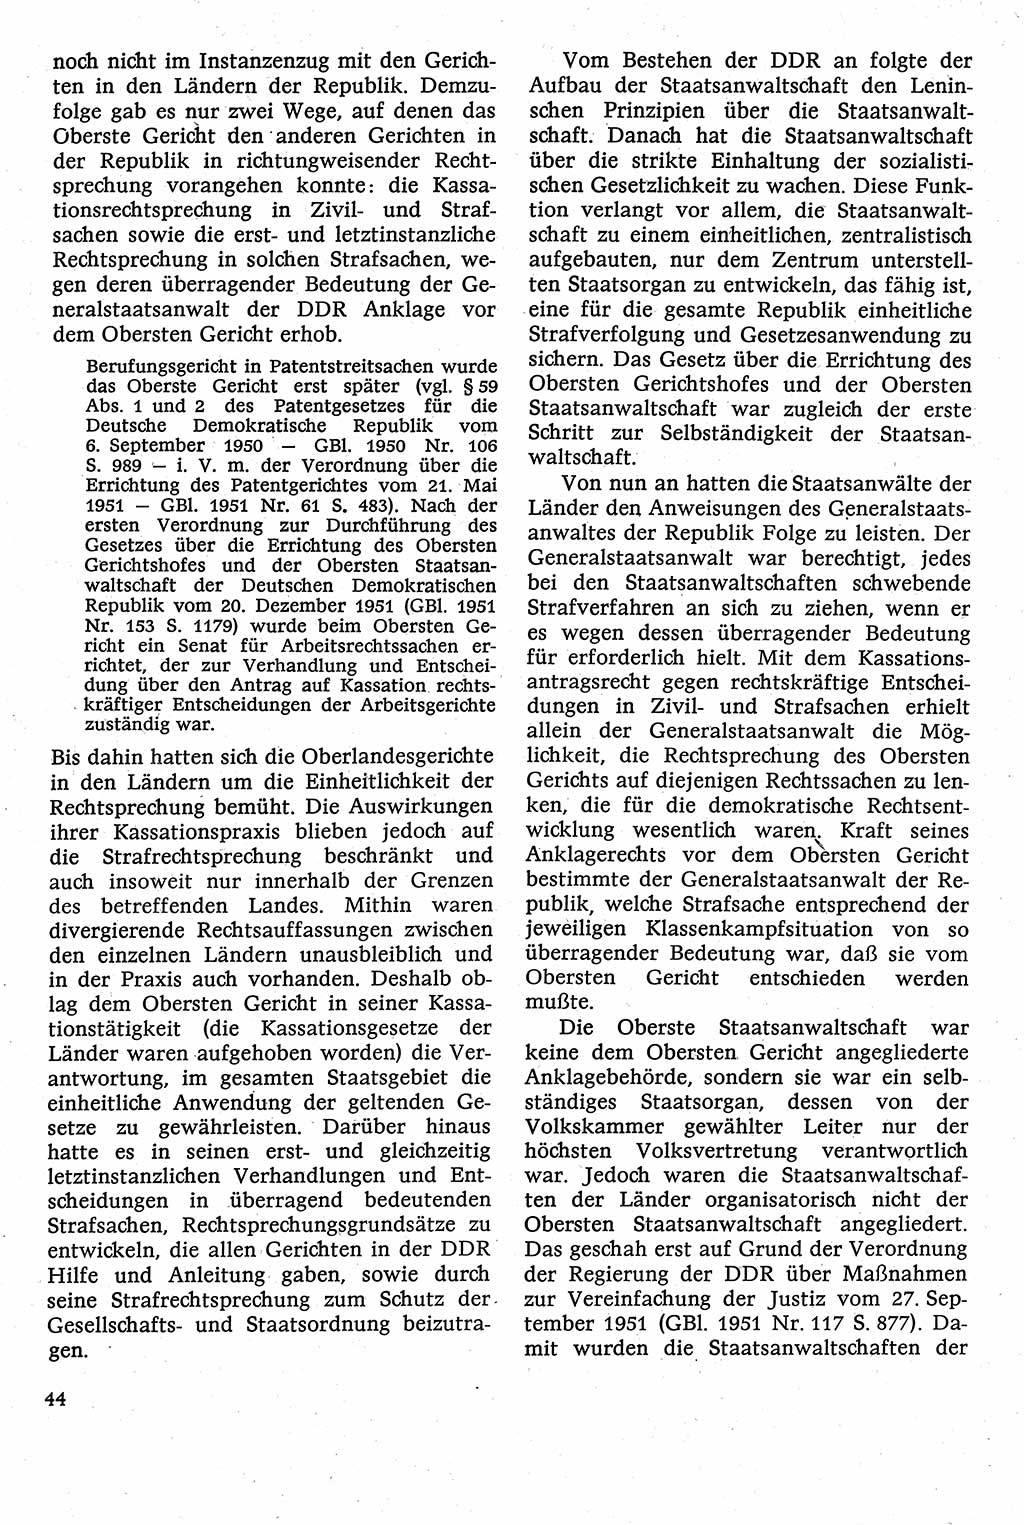 Strafverfahrensrecht [Deutsche Demokratische Republik (DDR)], Lehrbuch 1982, Seite 44 (Strafverf.-R. DDR Lb. 1982, S. 44)